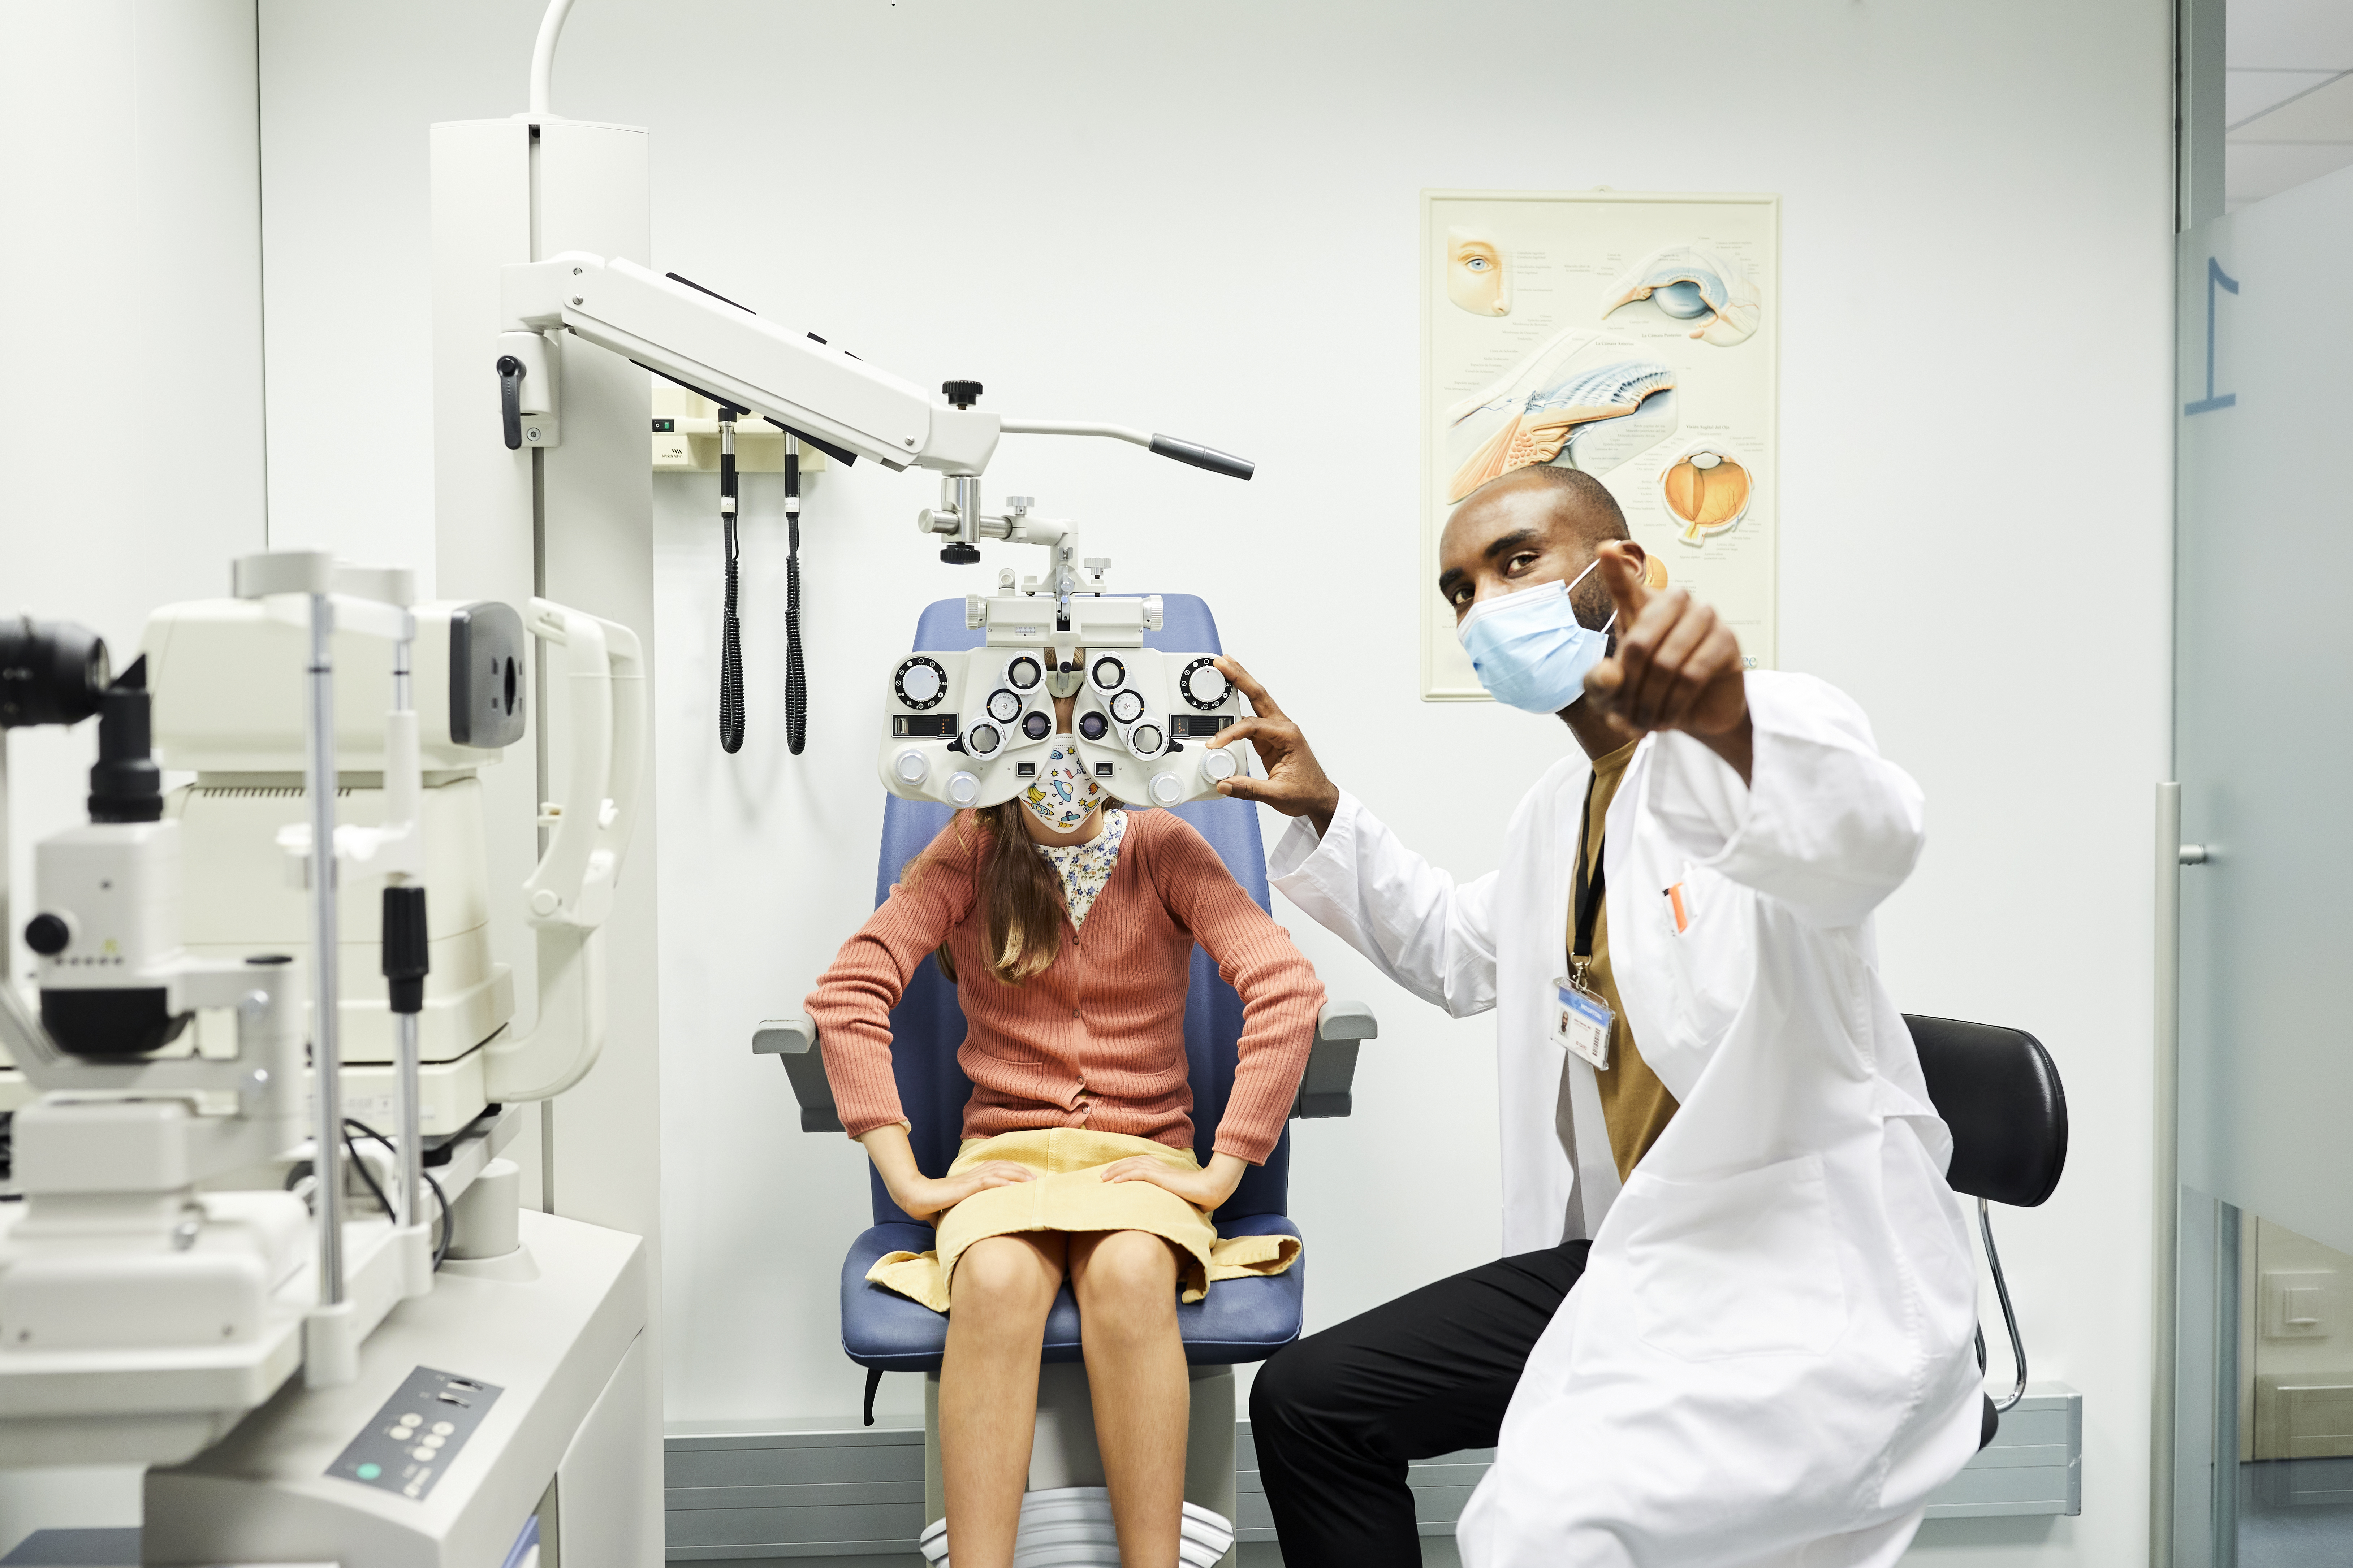 眼科医生戴着防护面罩向女孩做手势。女童坐在医生诊所验光仪的后面。他们在 COVID-19 危机期间在医院接受眼科检查。